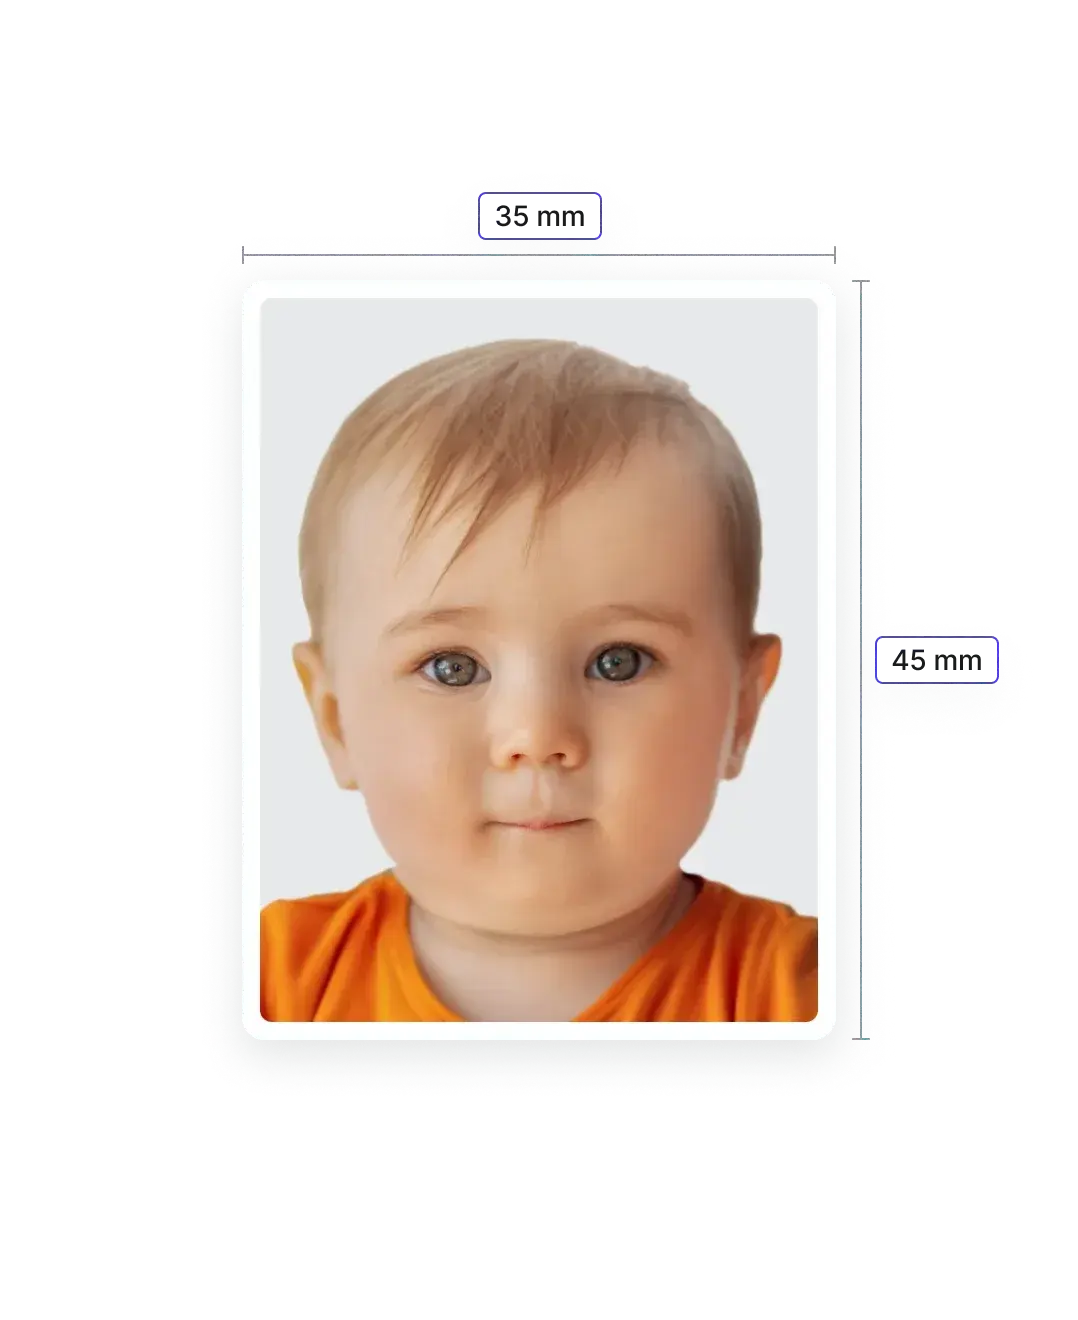 Baby-Passbilder aufnehmen